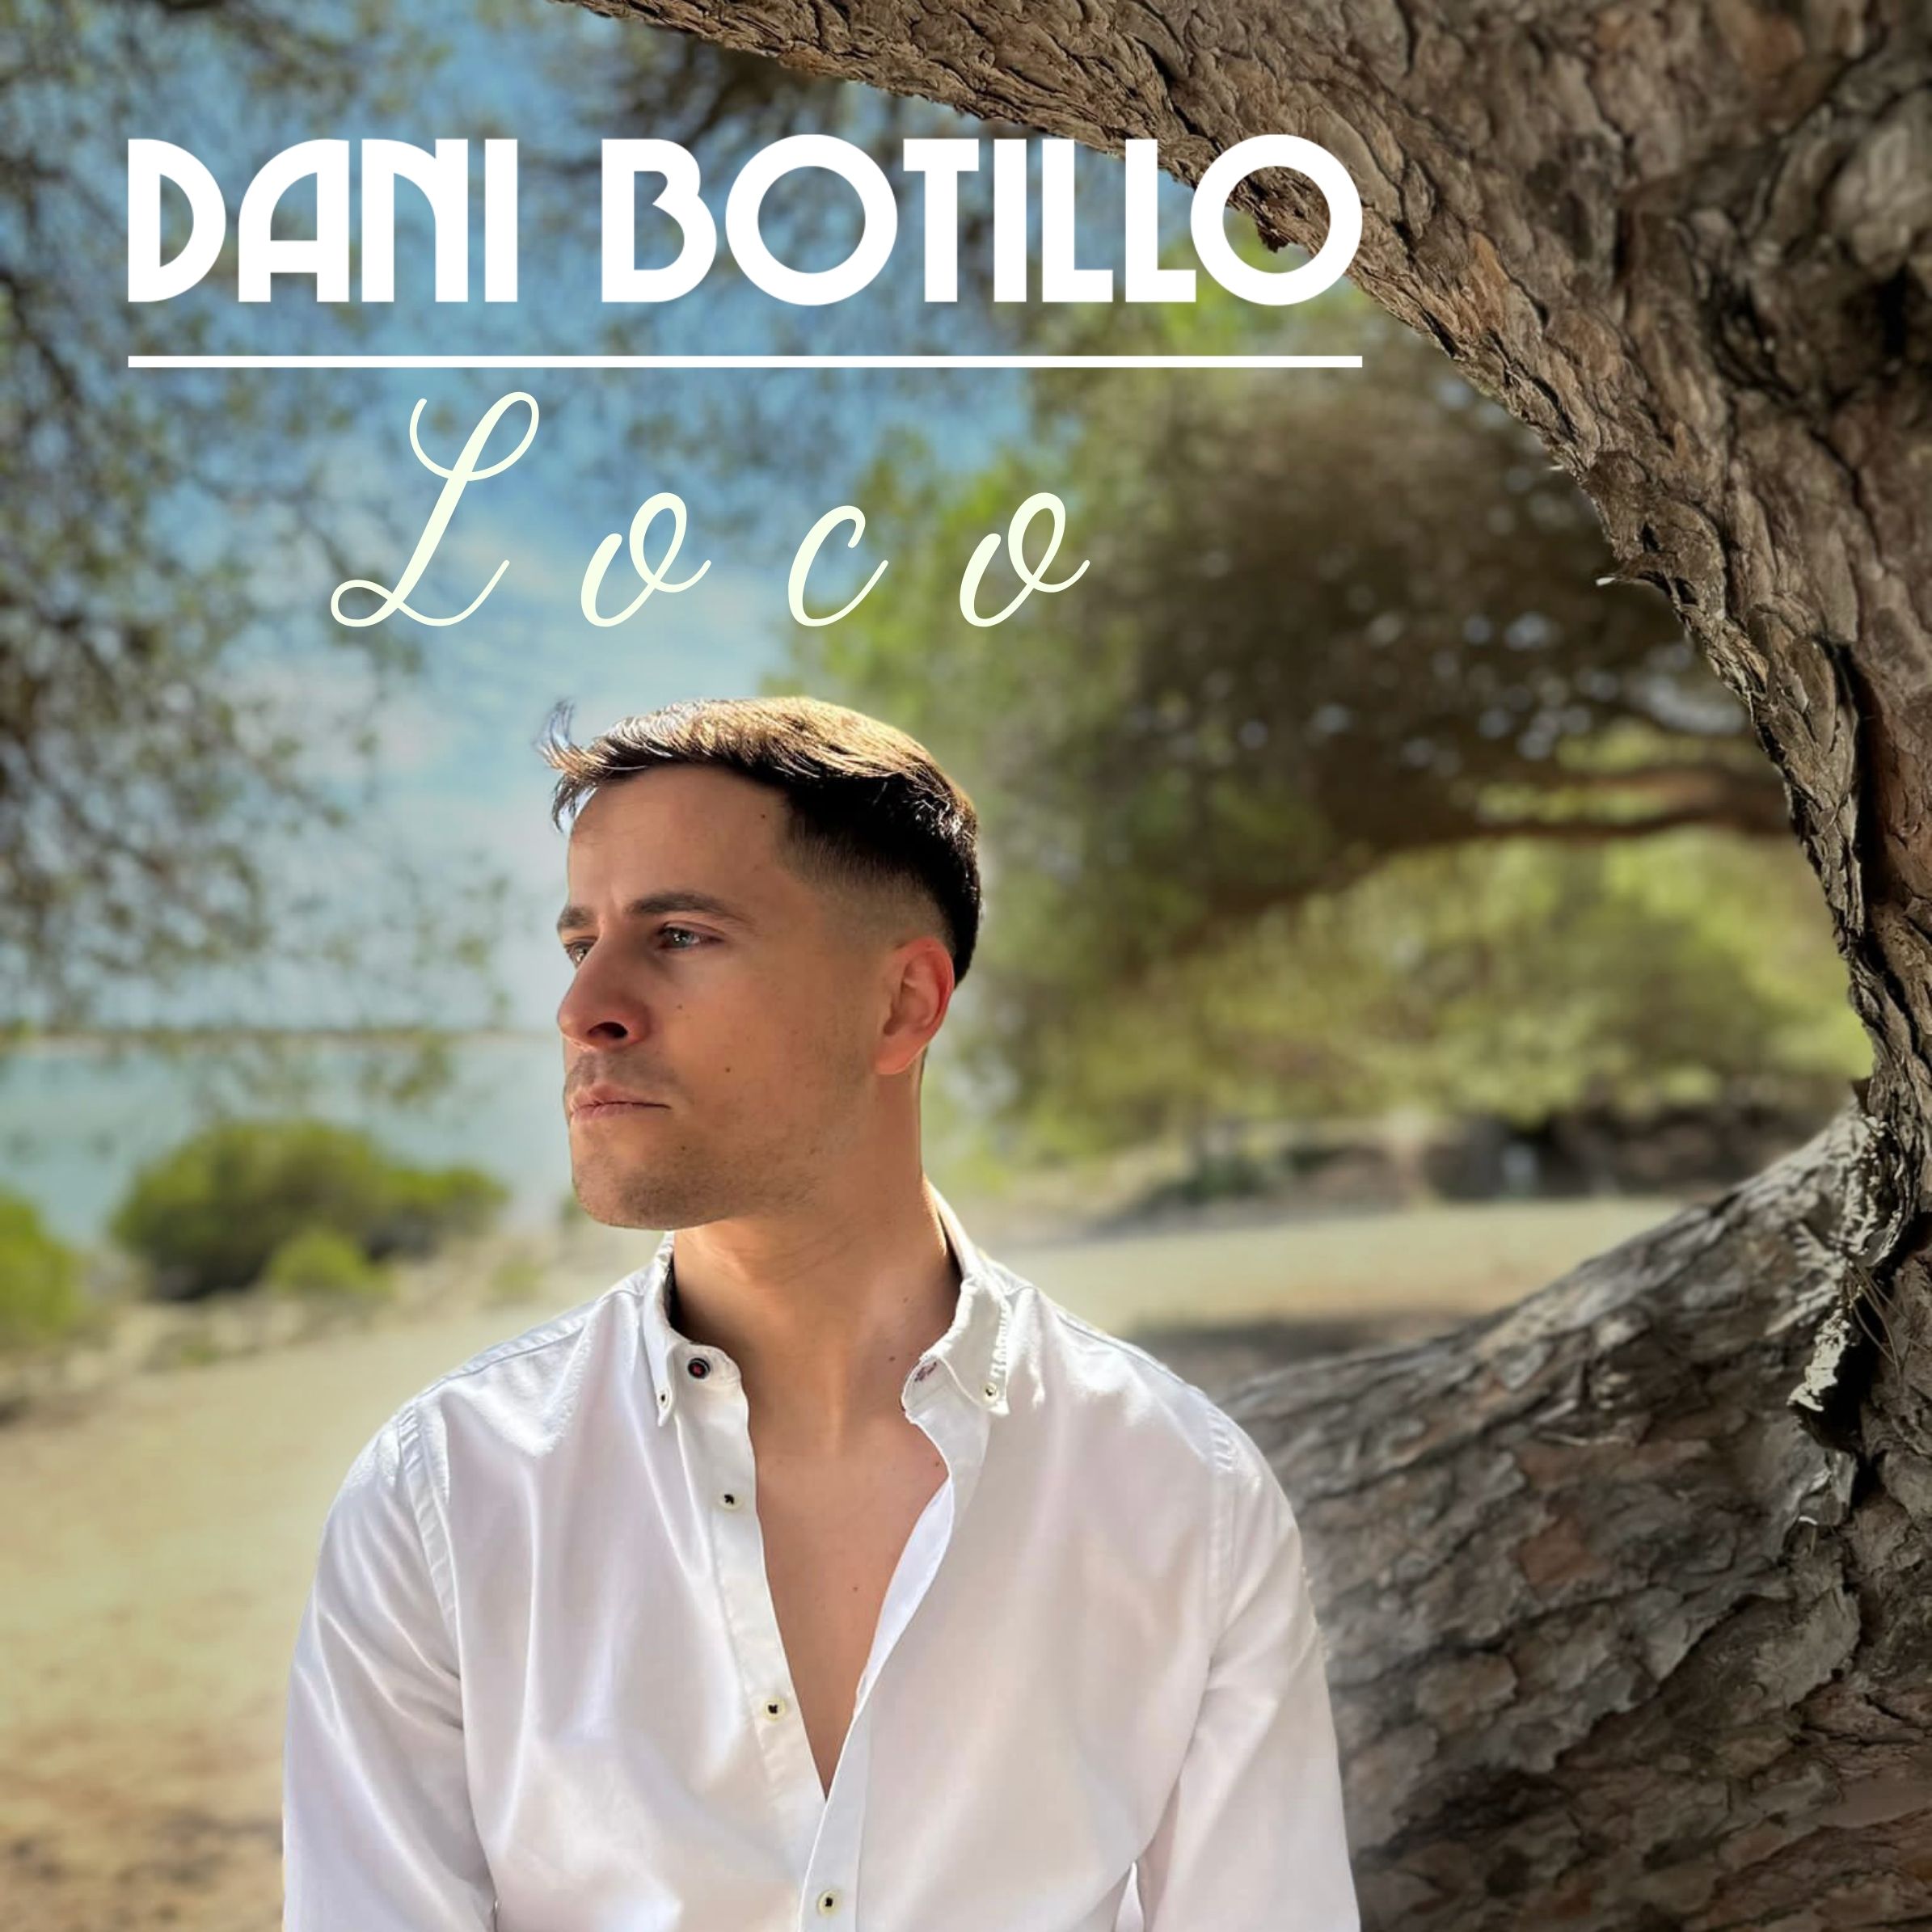 “Loco”, el nuevo single de Dani Botillo, disponible el 7 de julio en plataformas de música digital